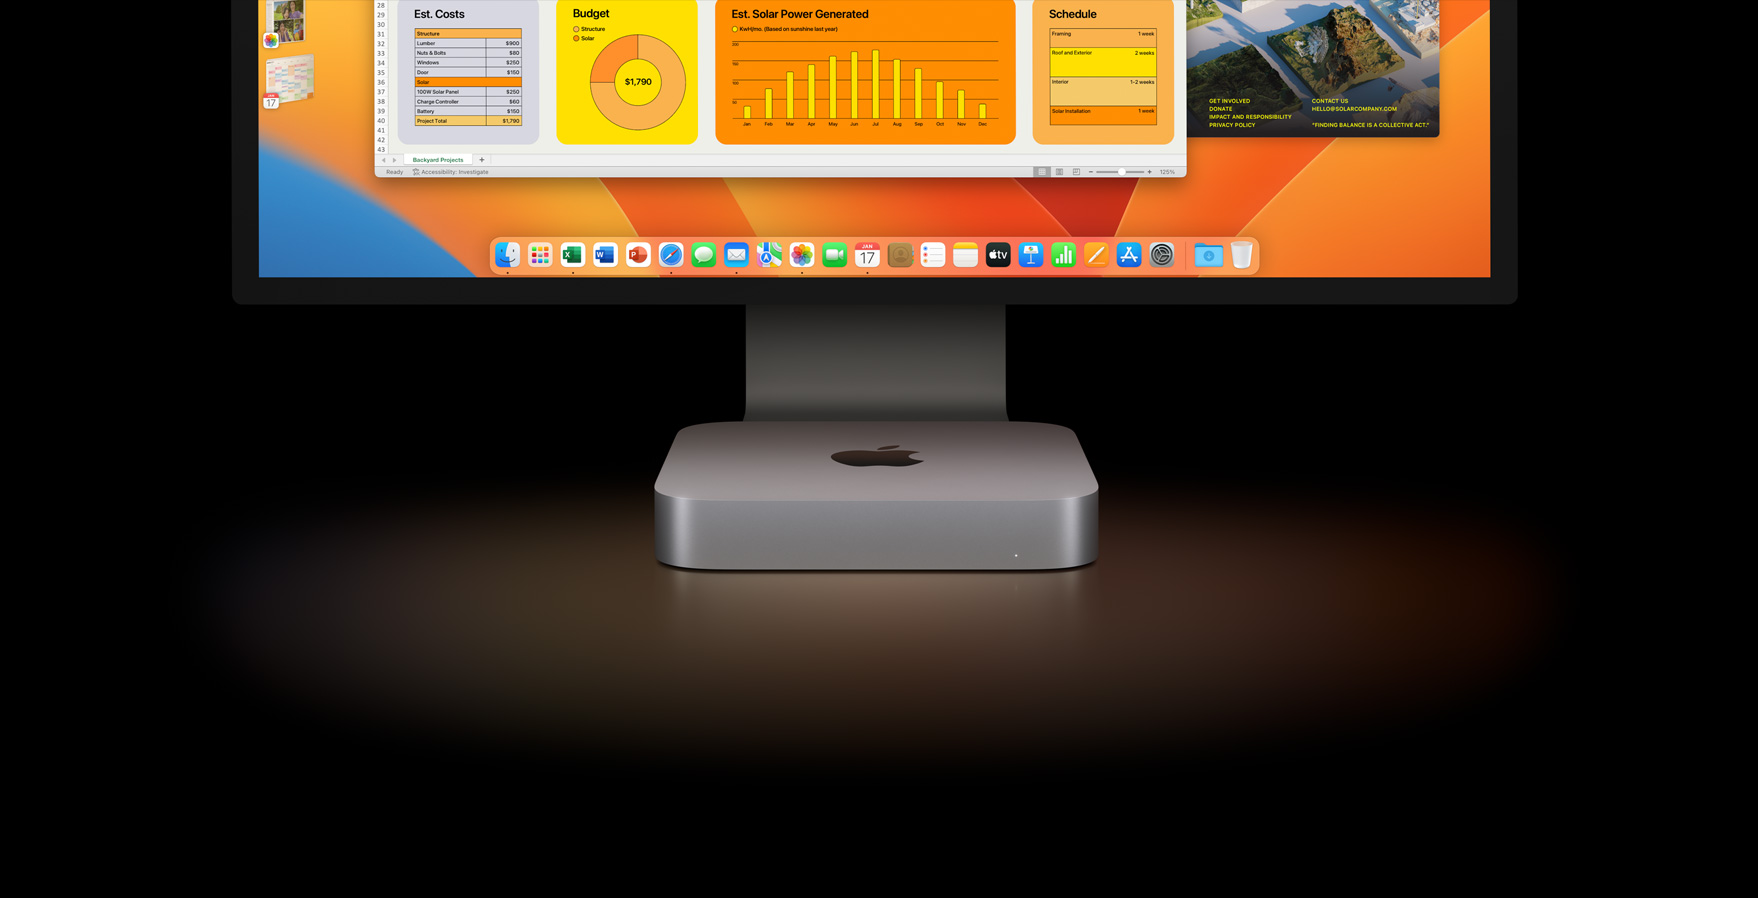 APPLE Mac mini i7/16GB/SSD1TB+HD1TB